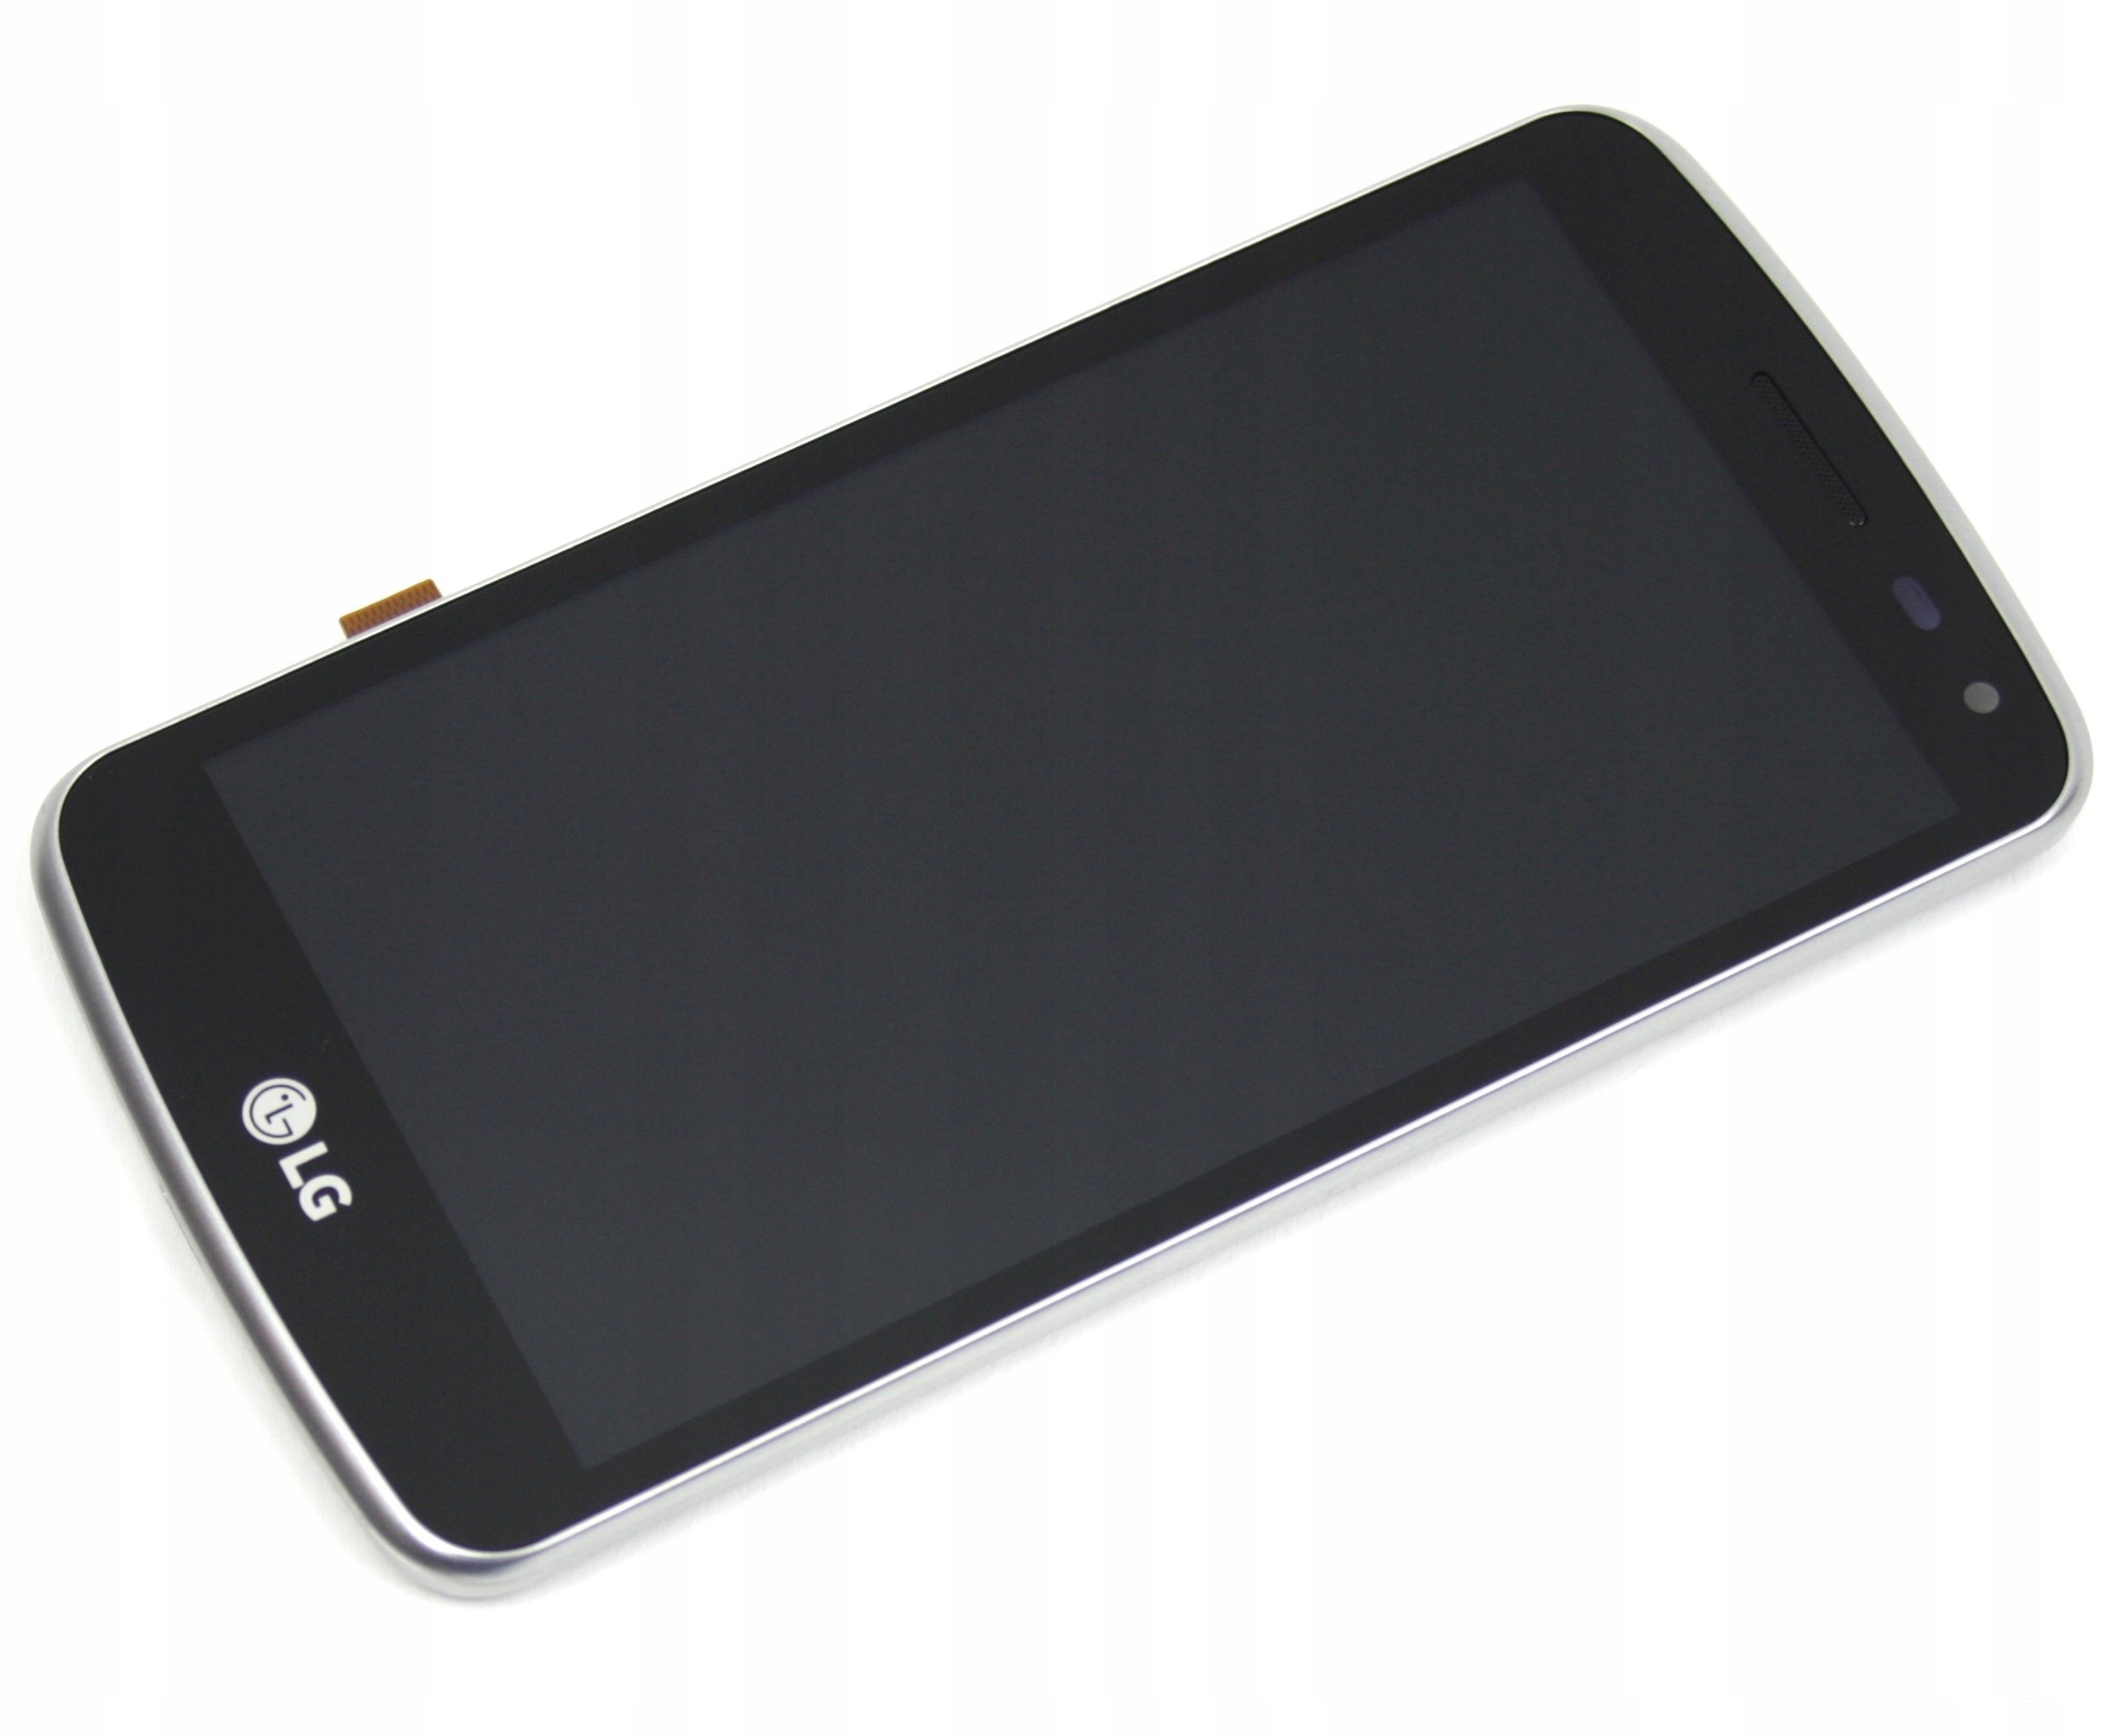 WYŚWIETLACZ Z DIGITIZEREM LG K5 X220 CZARNY ZE SREBRNĄ RAMKĄ - Wyświetlacze z digitizerami do telefonów